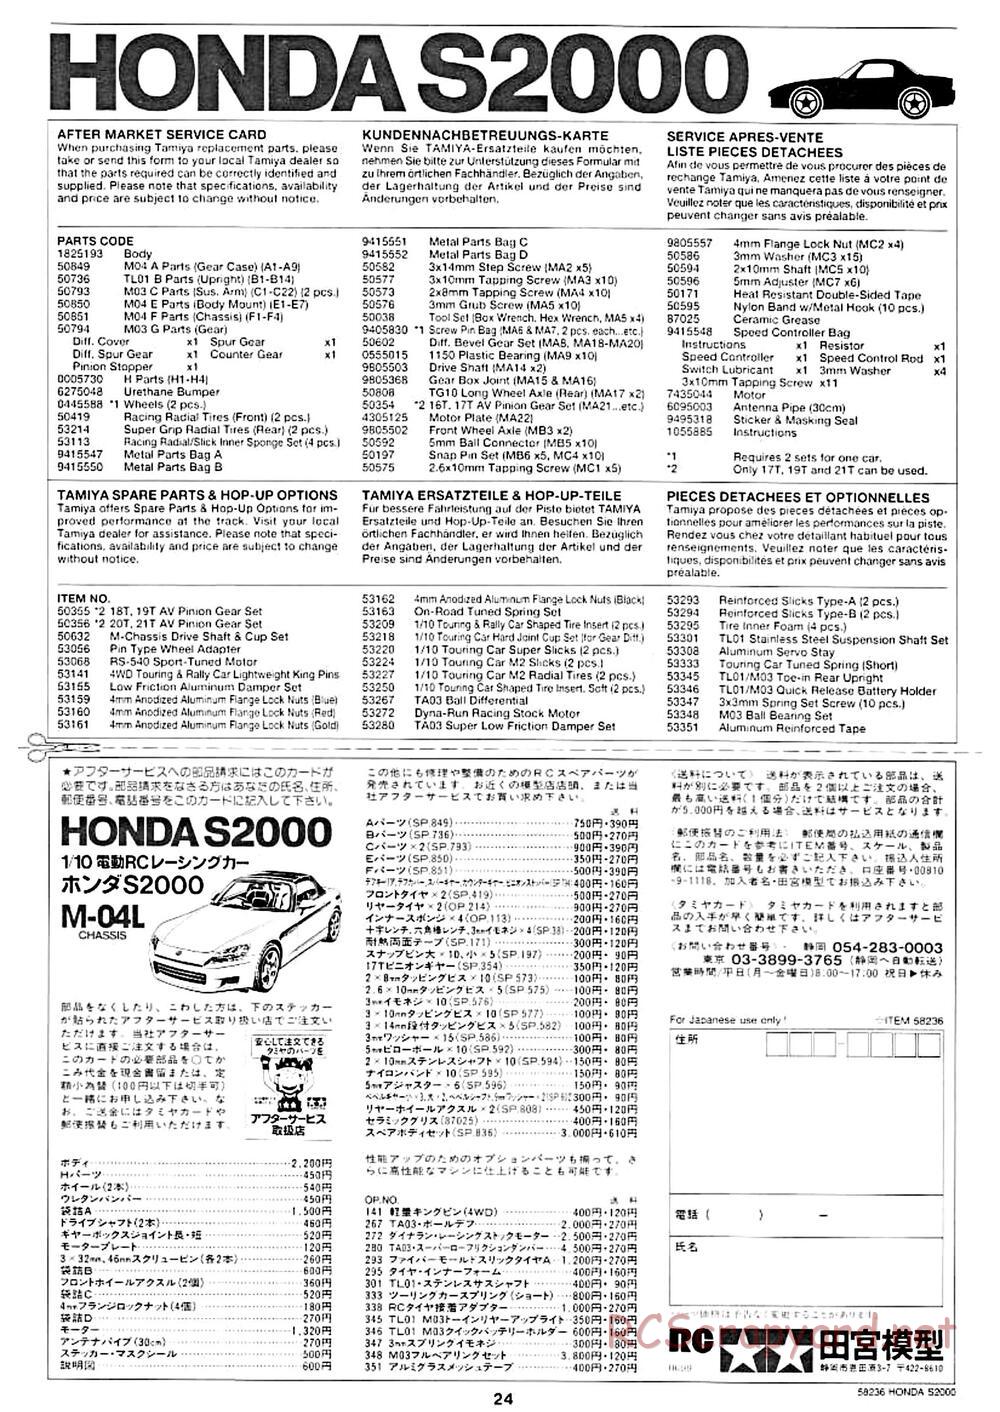 Tamiya - Honda S2000 - M04L Chassis - Manual - Page 20